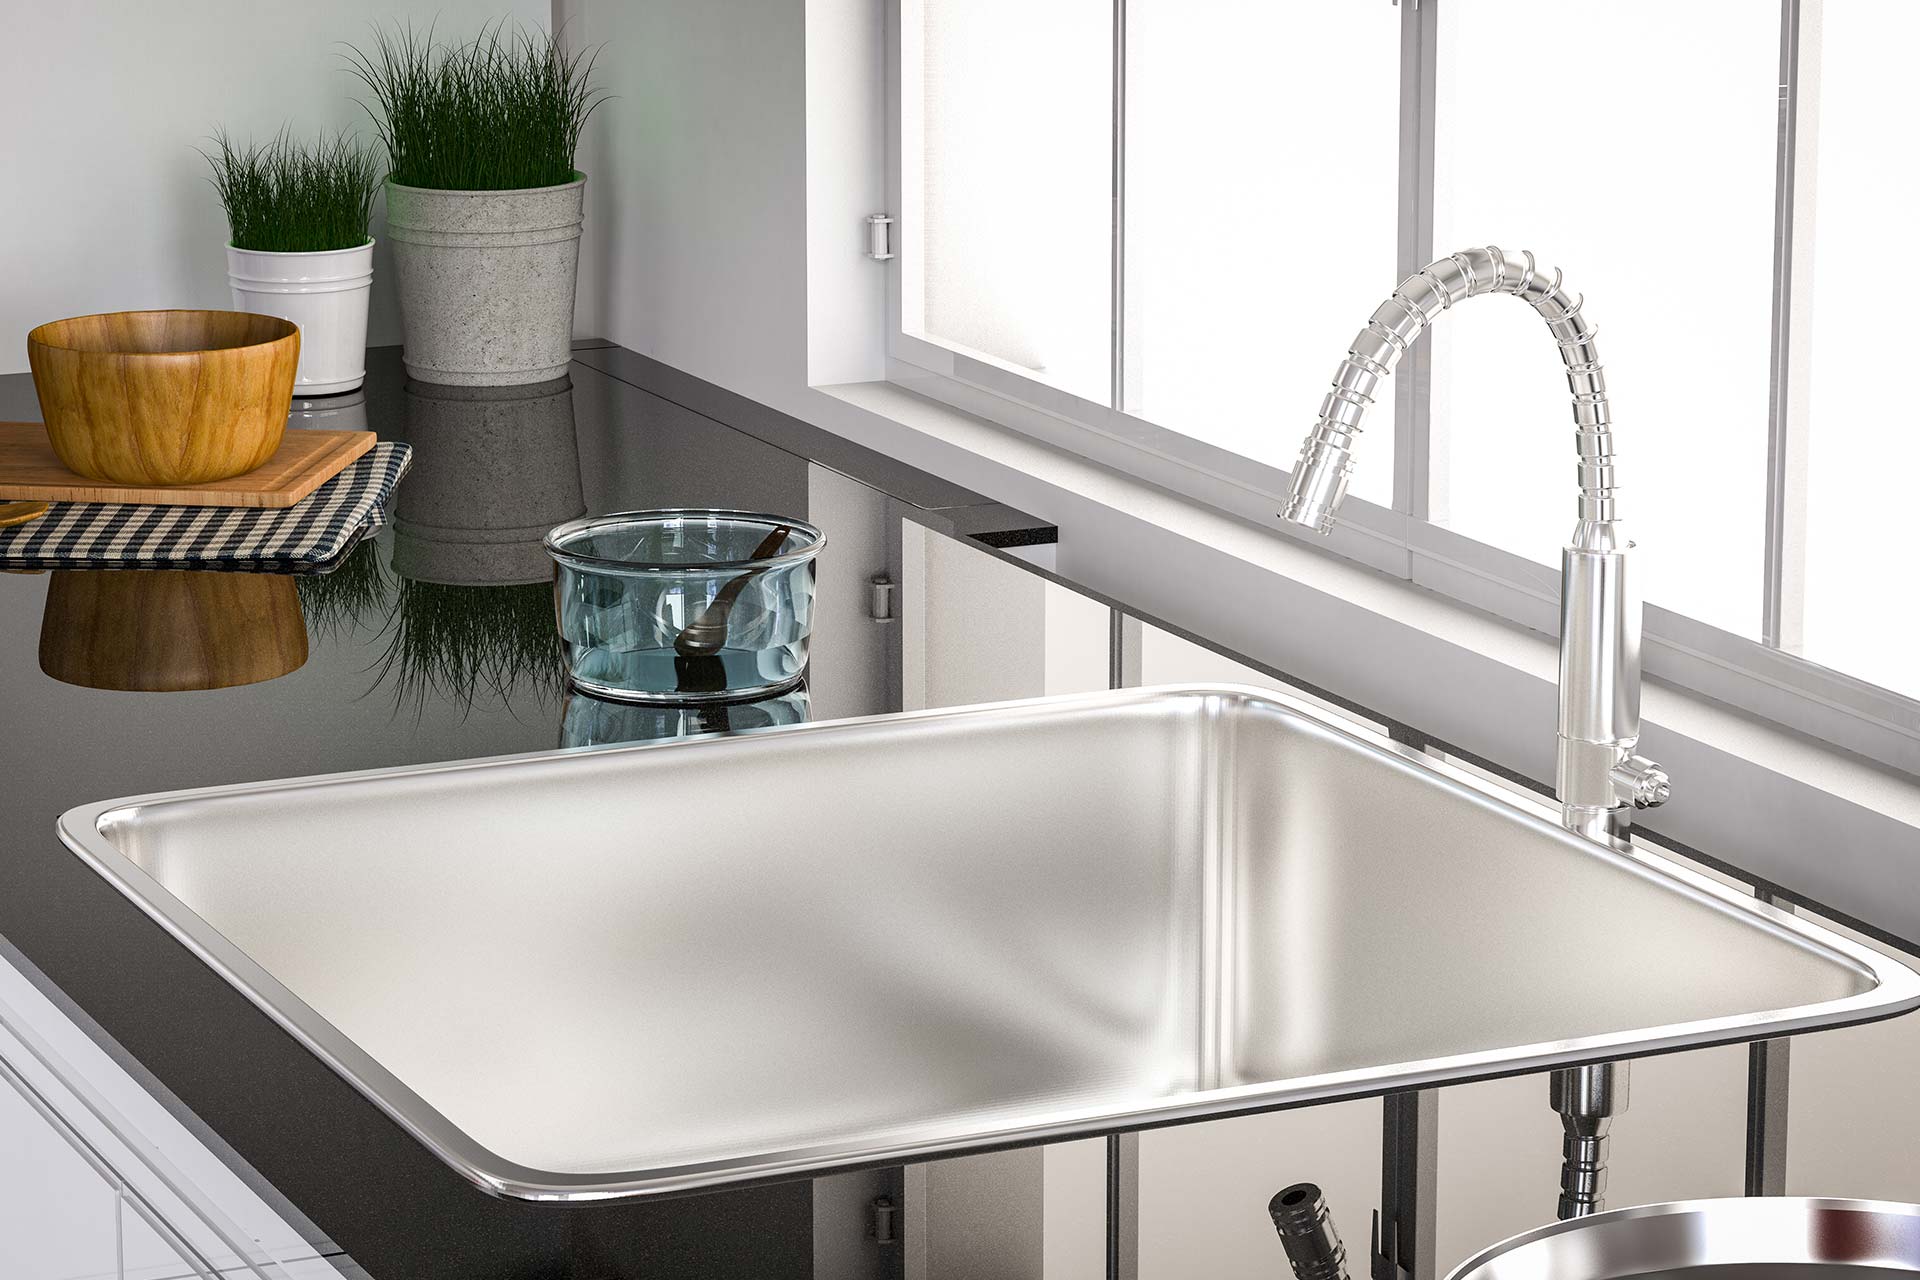 best way to freshen kitchen sink drain